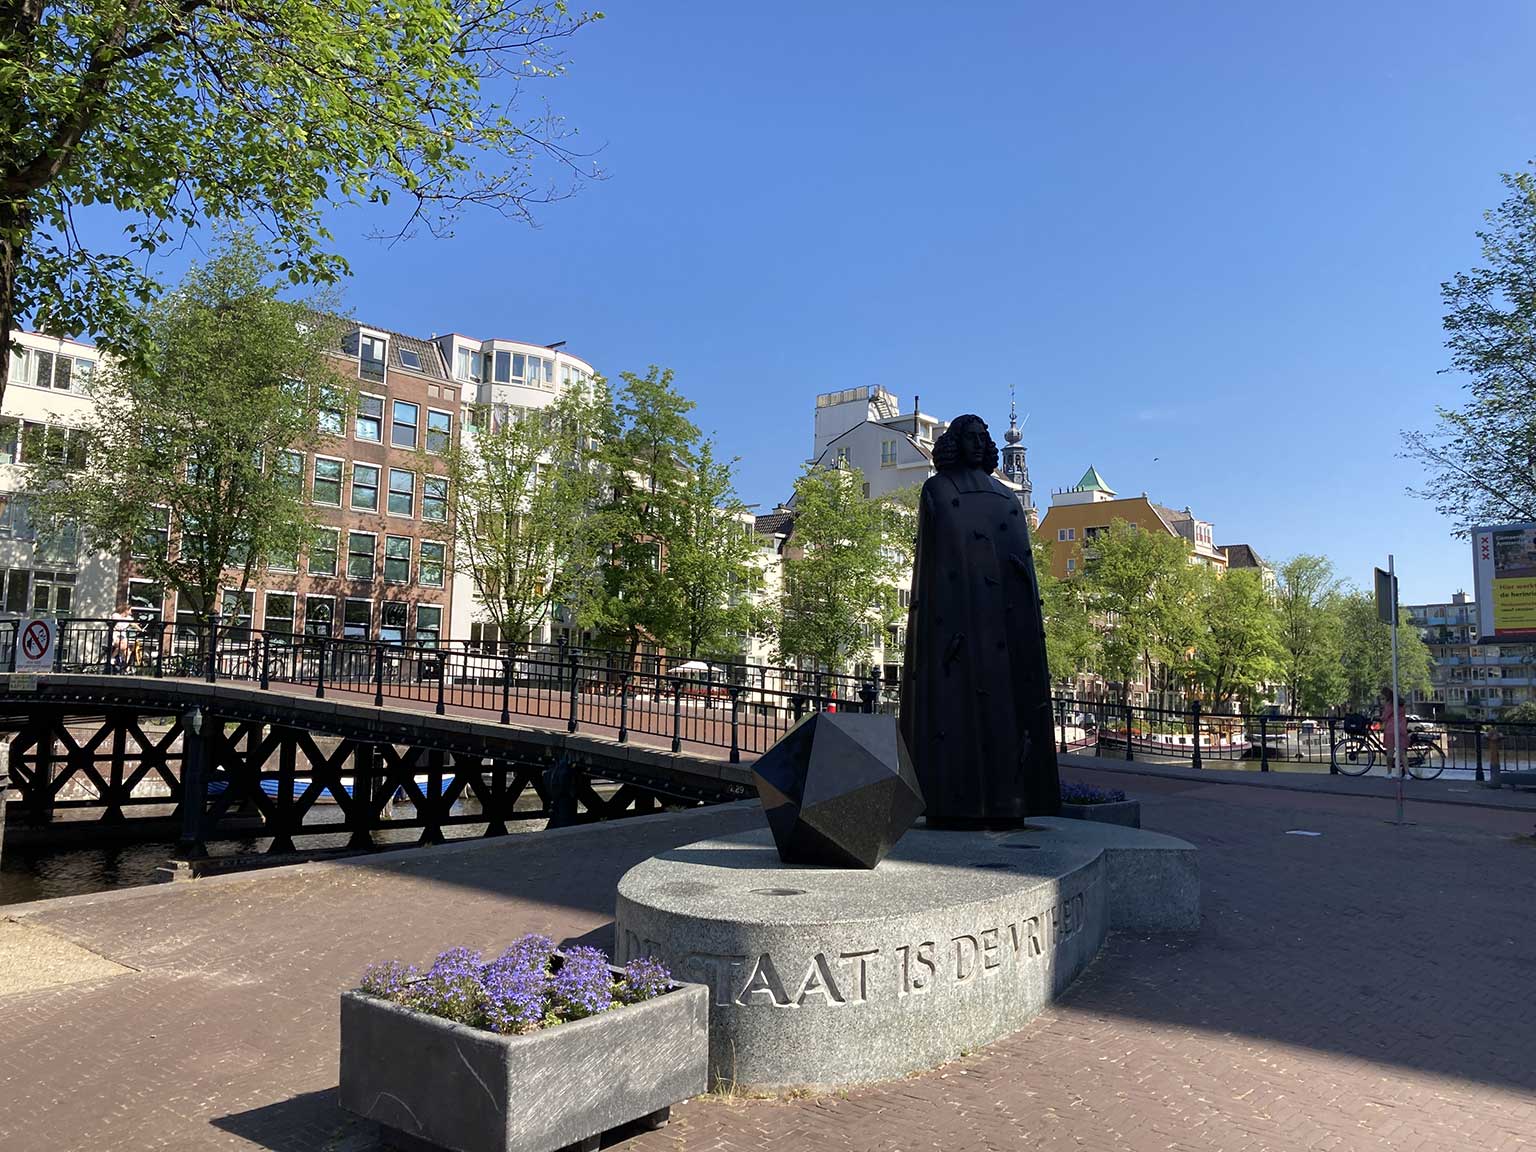 Beeld van Spinoza op de Zwanenburgwal, Amsterdam, met inscriptie op het voetstuk